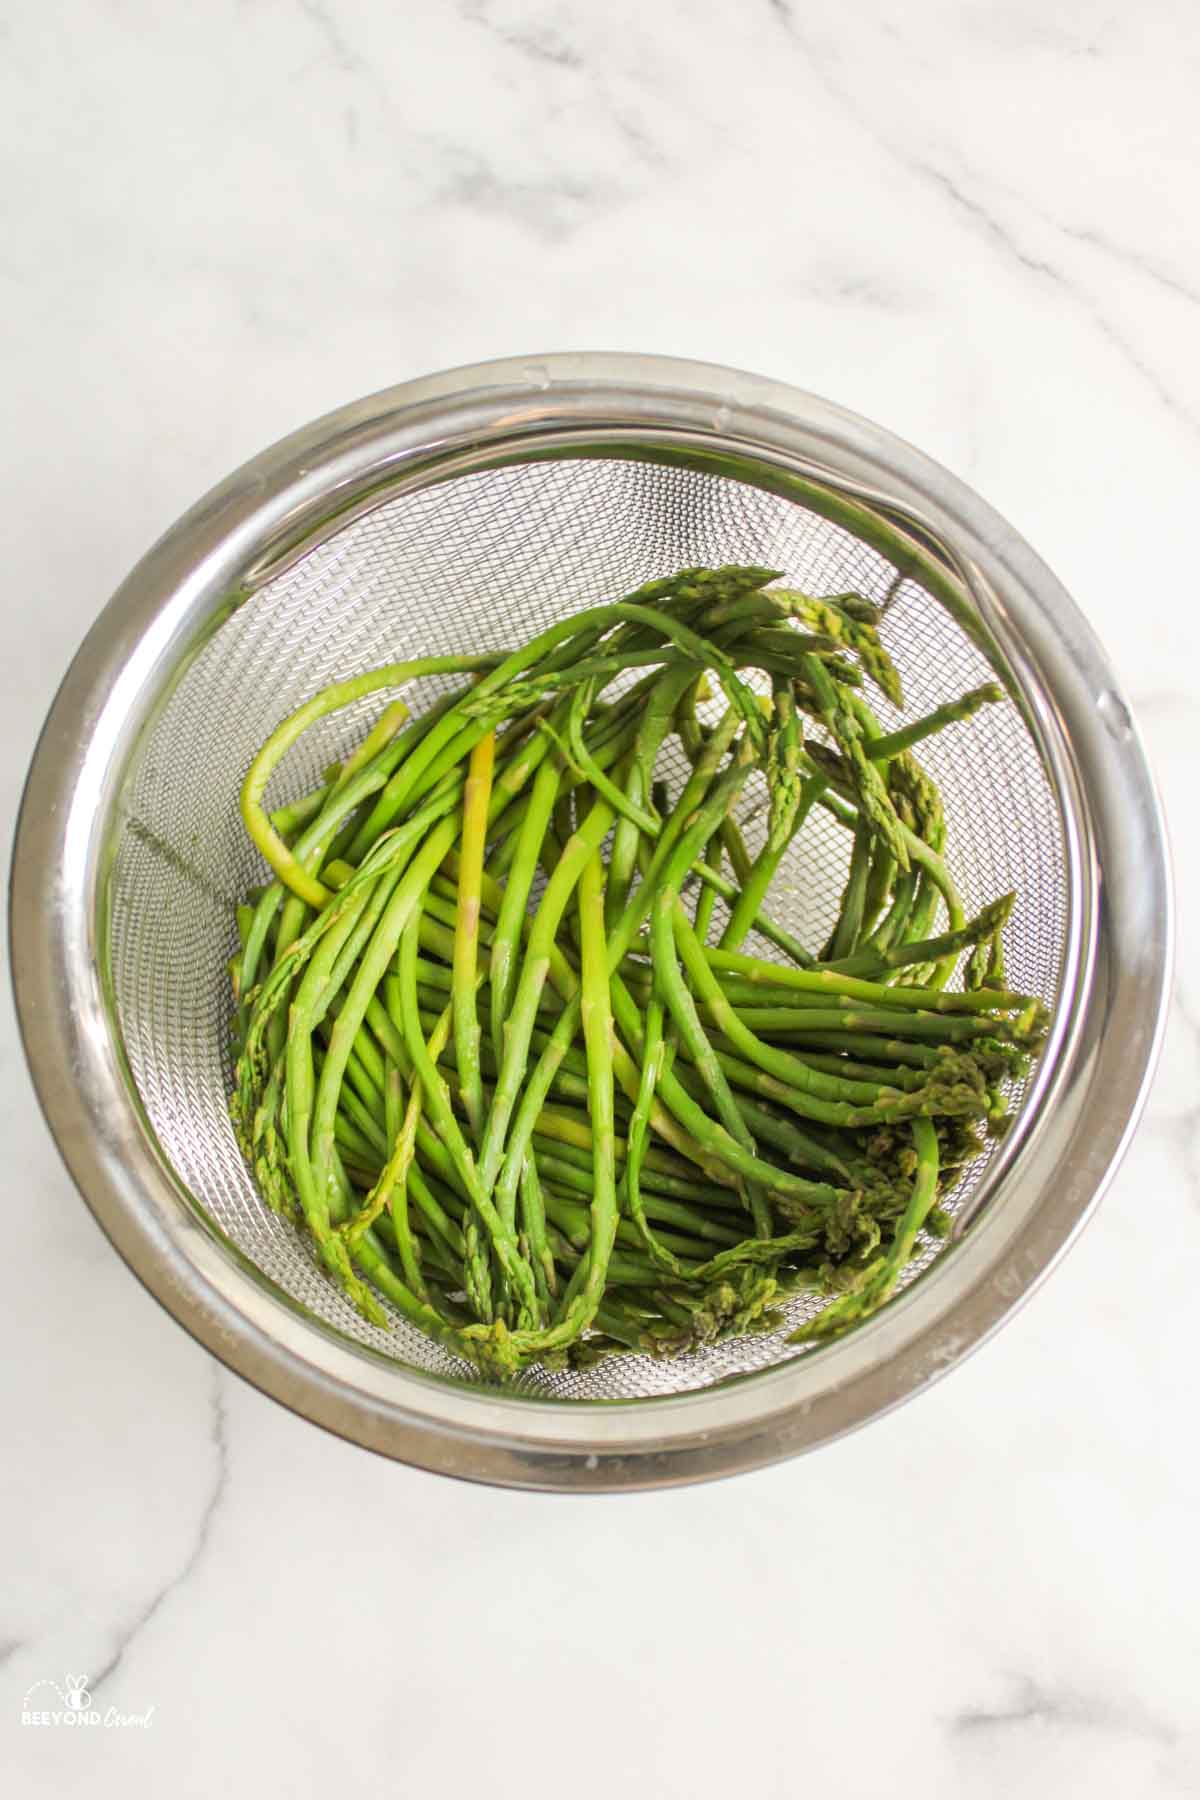 steamed asparagus in instant pot steamer basket.